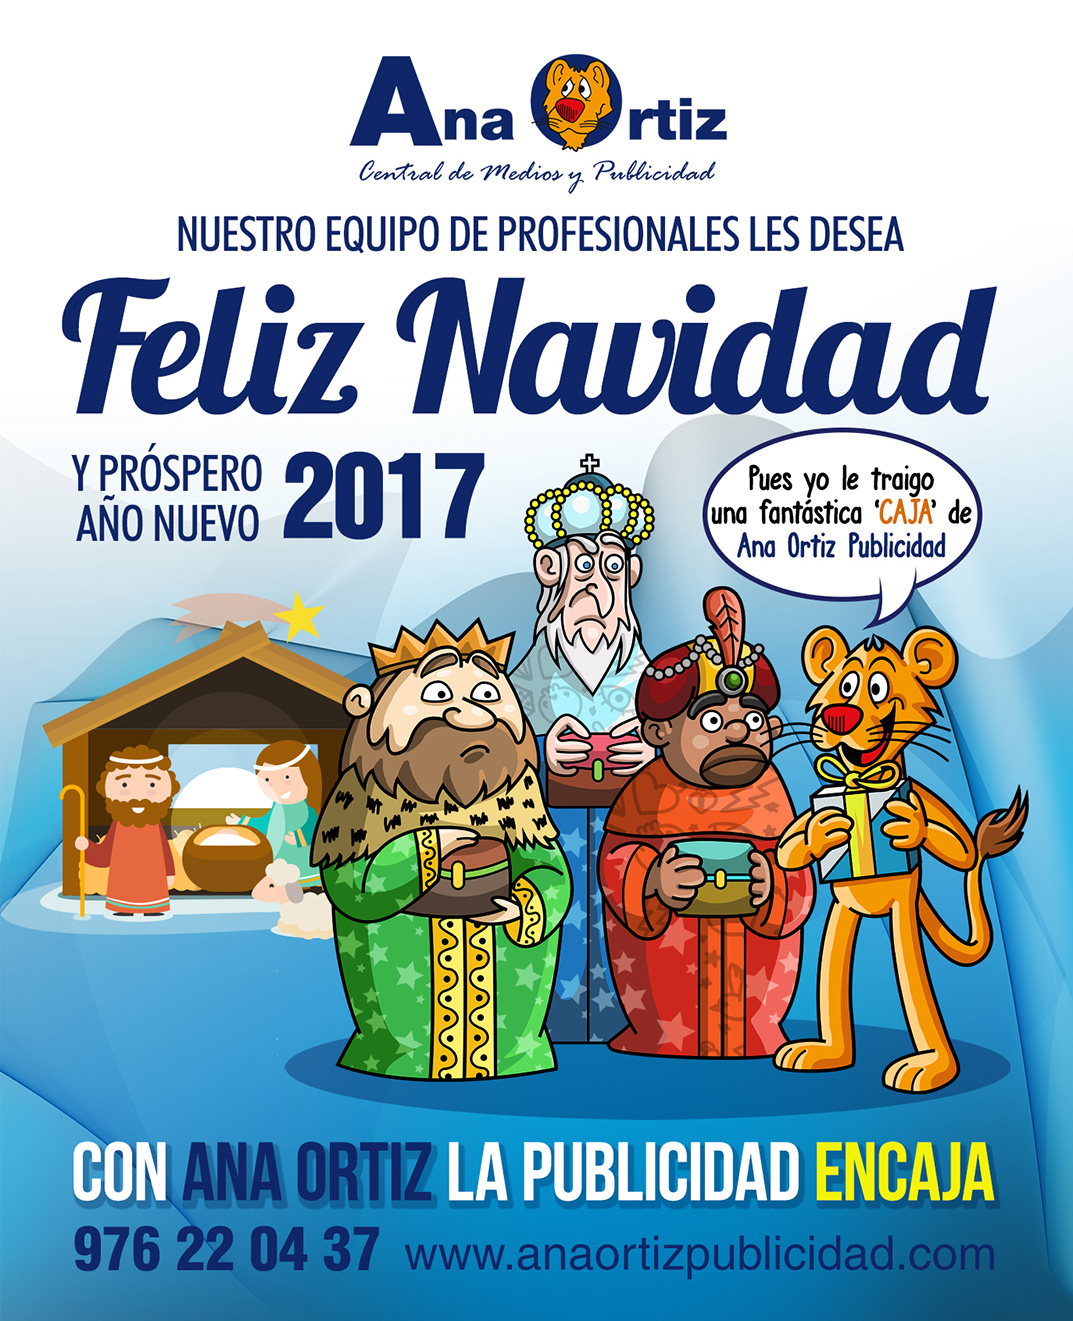 Felicitación de Navidad de Ana Ortiz Publicidad 2016